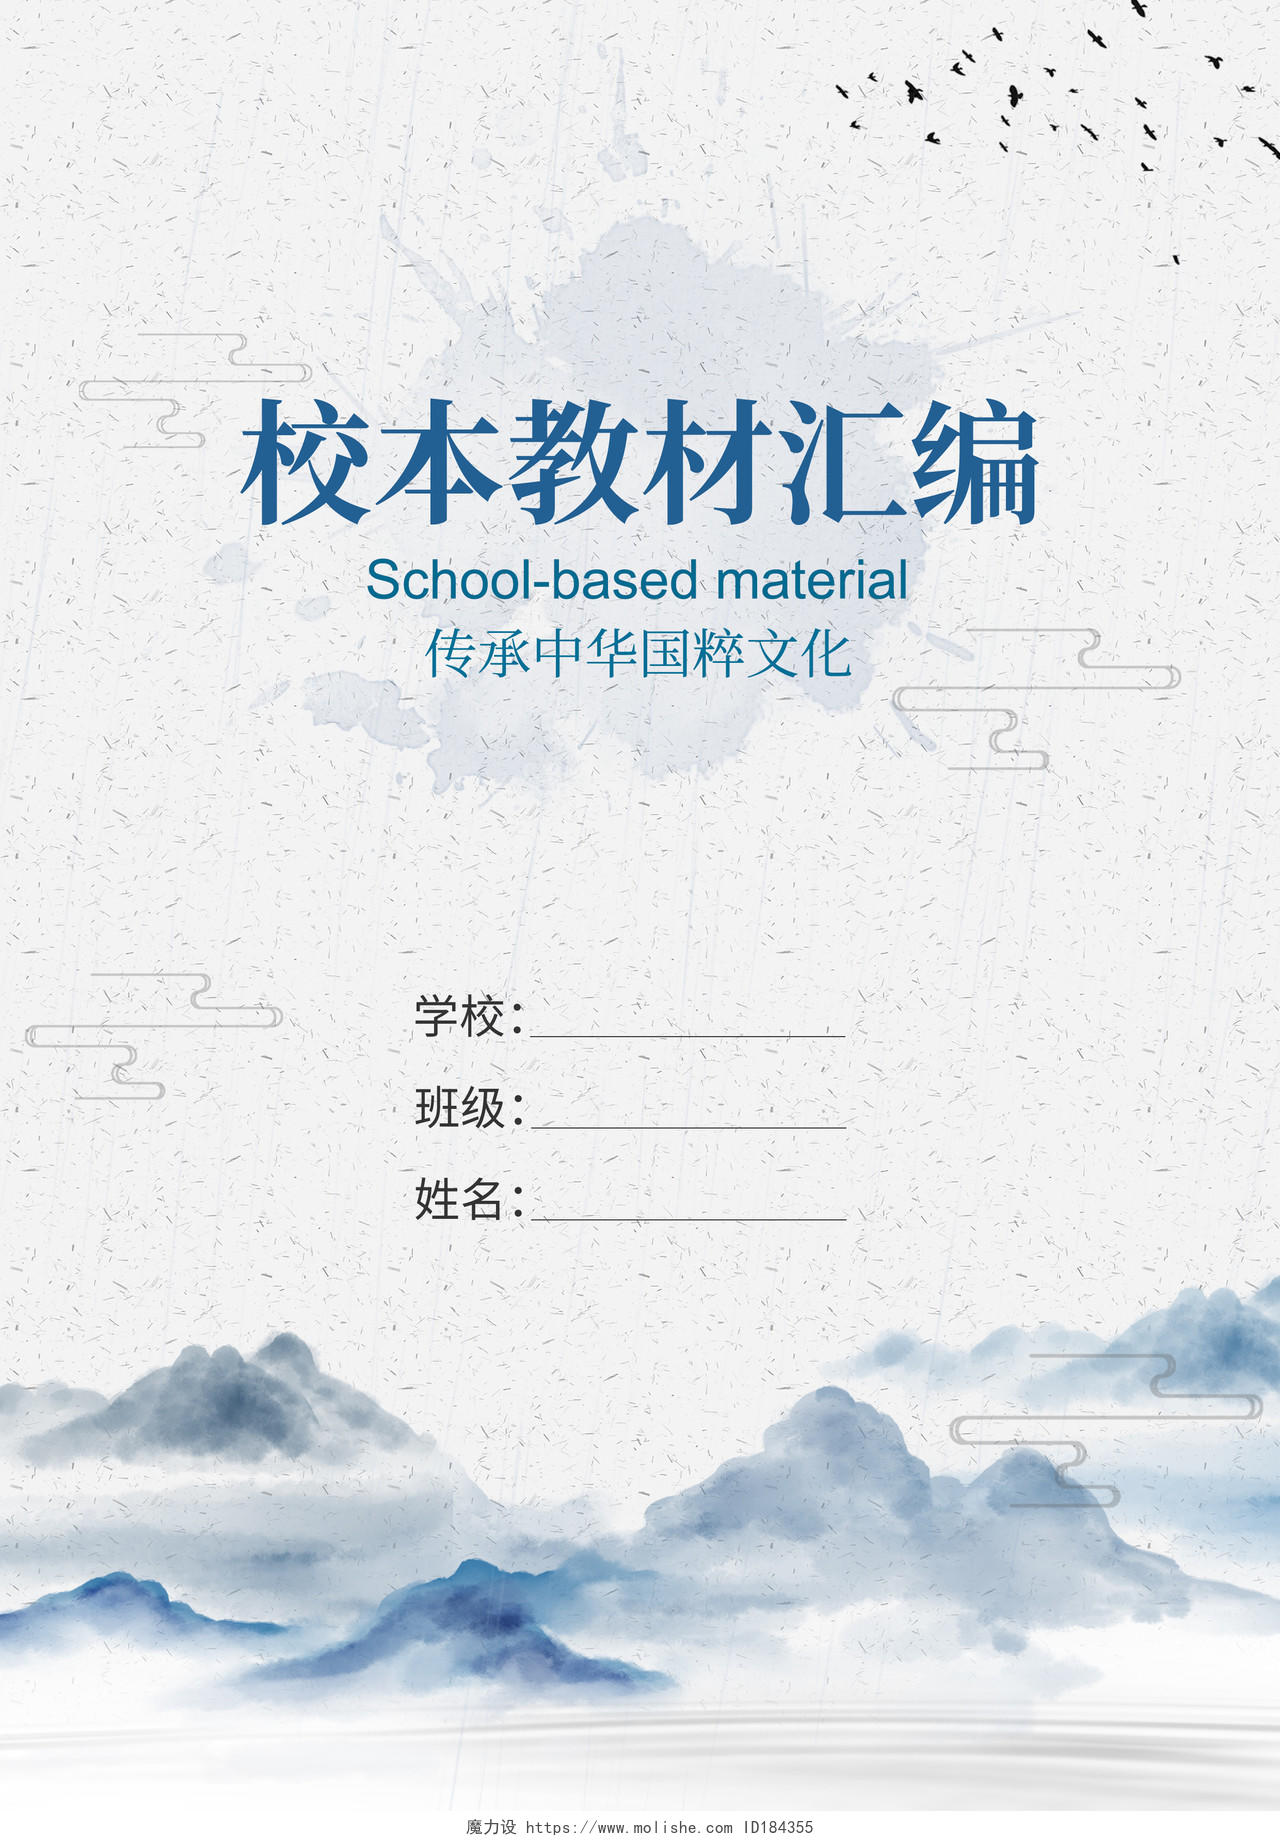 中国风山水水墨校本素材实践作业封面画册封面